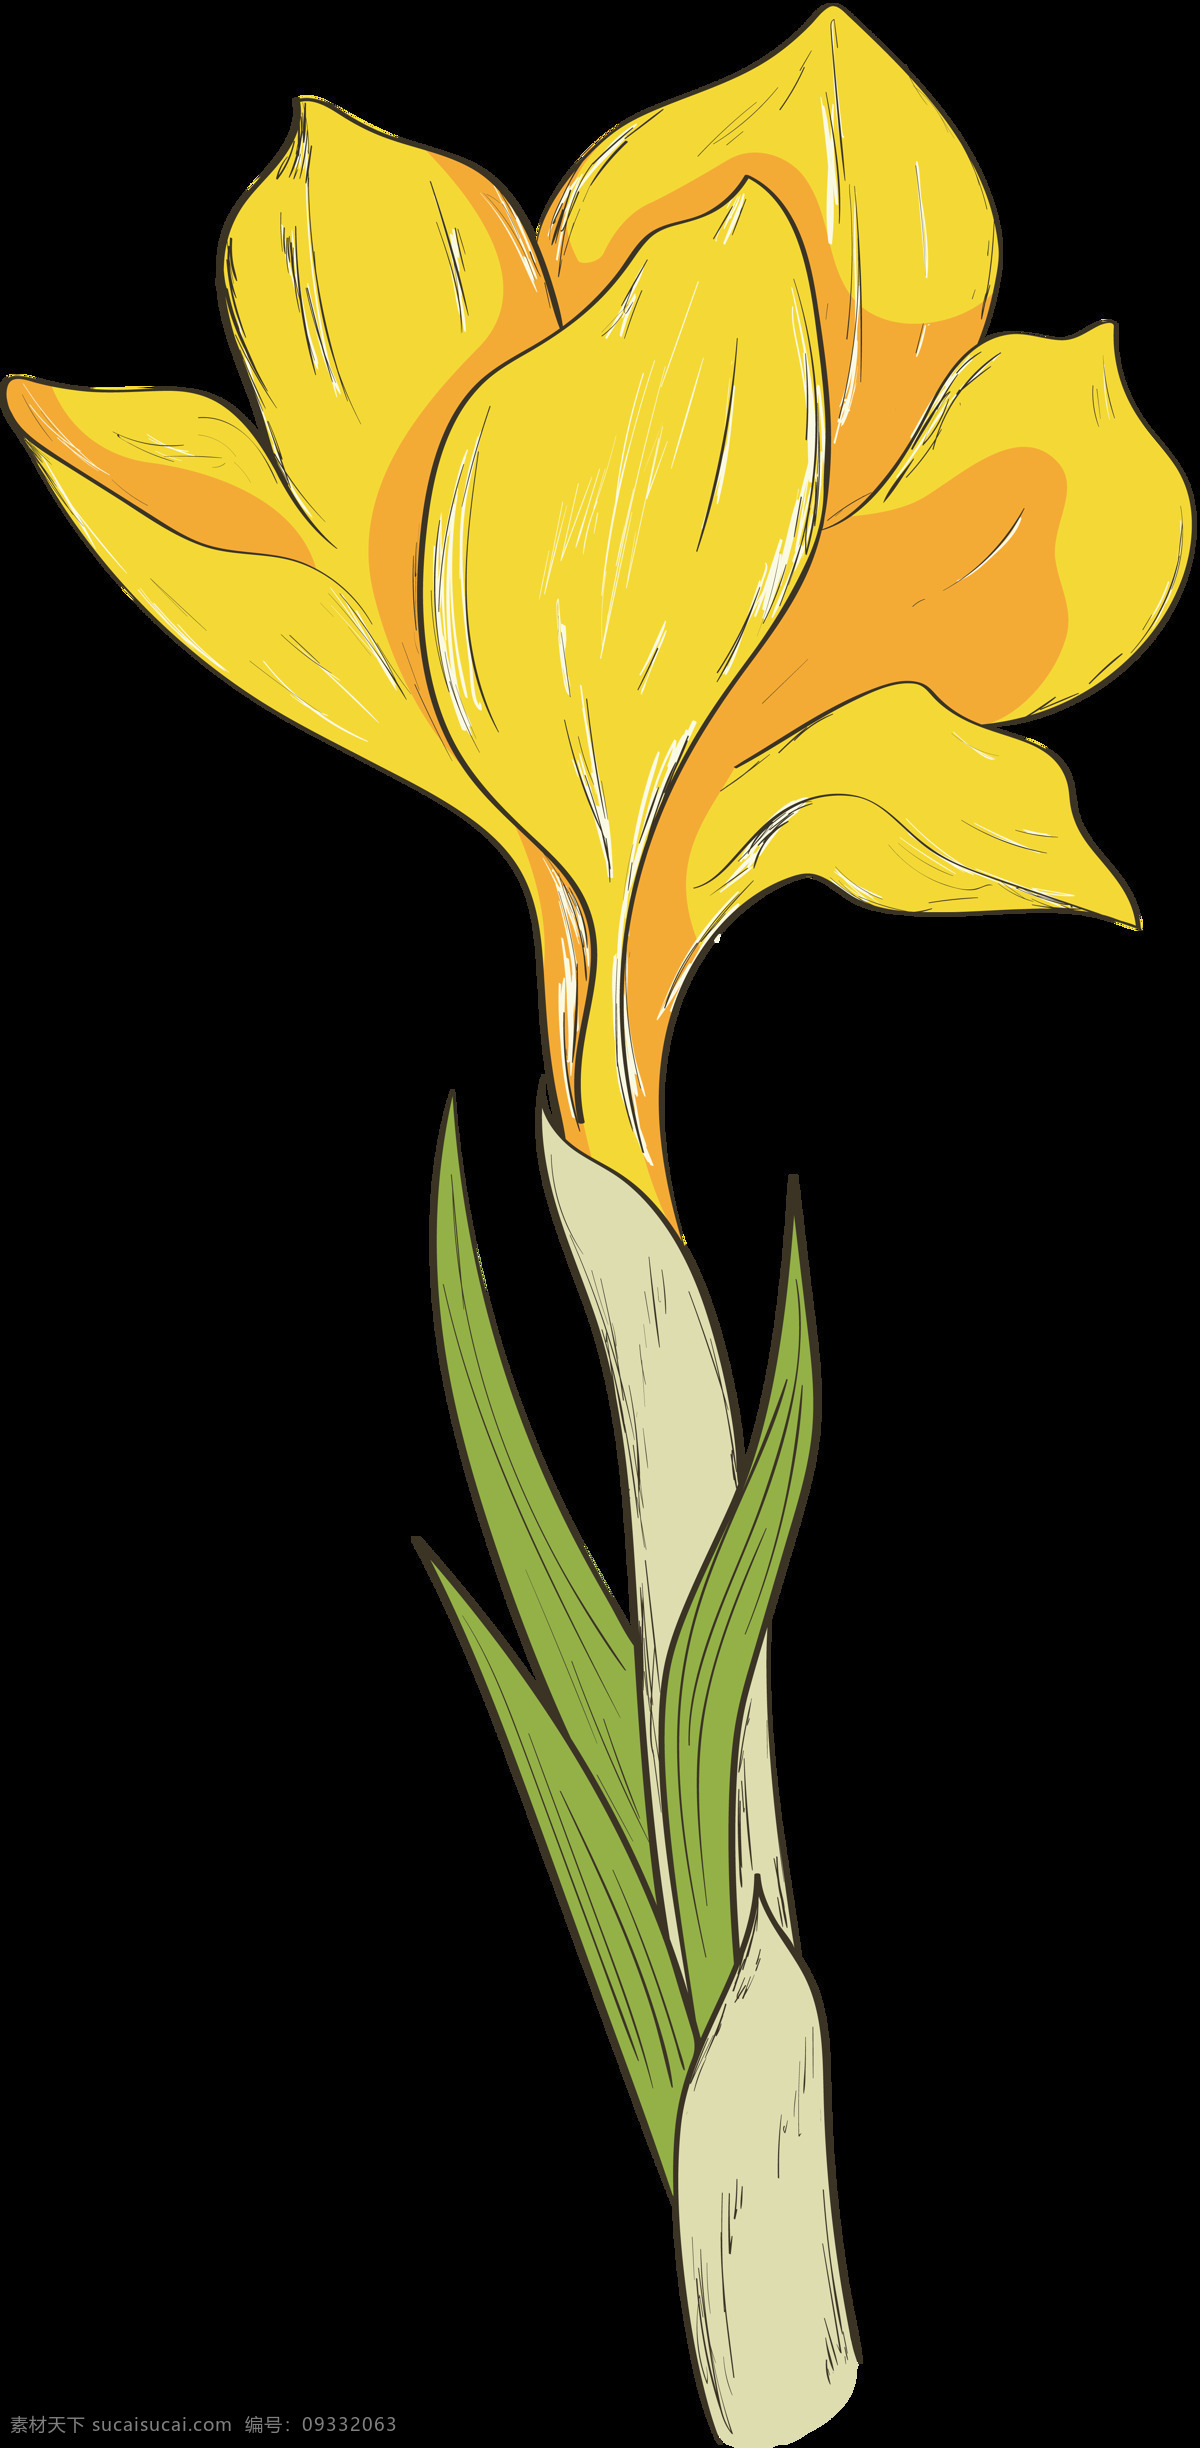 手绘 朵 绽放 黄色 花 透明 花朵 花瓣 绿叶 平面素材 设计素材 矢量素材 水彩